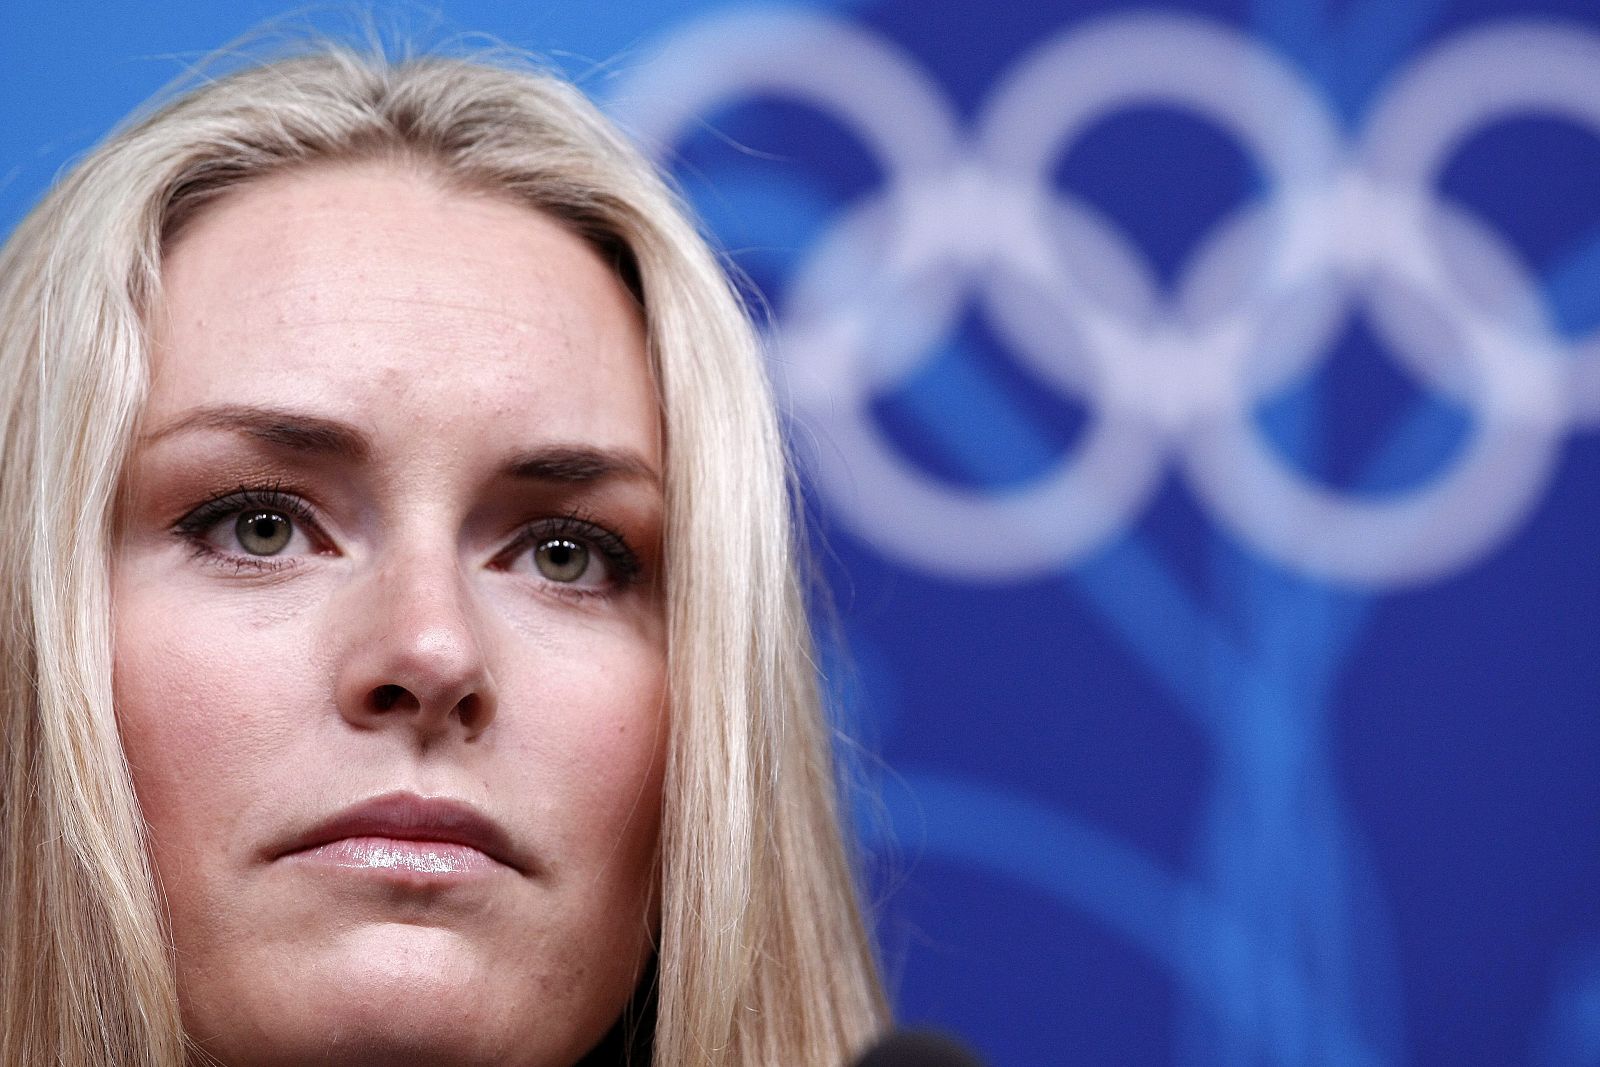 La estadounidense Lindsey Vonn ha revelado en rueda de prensa que tuvo que "parar unos días, debido a unas dolencias en la espinilla derecha" que se provocó entrenando en Austria la pasada semana.